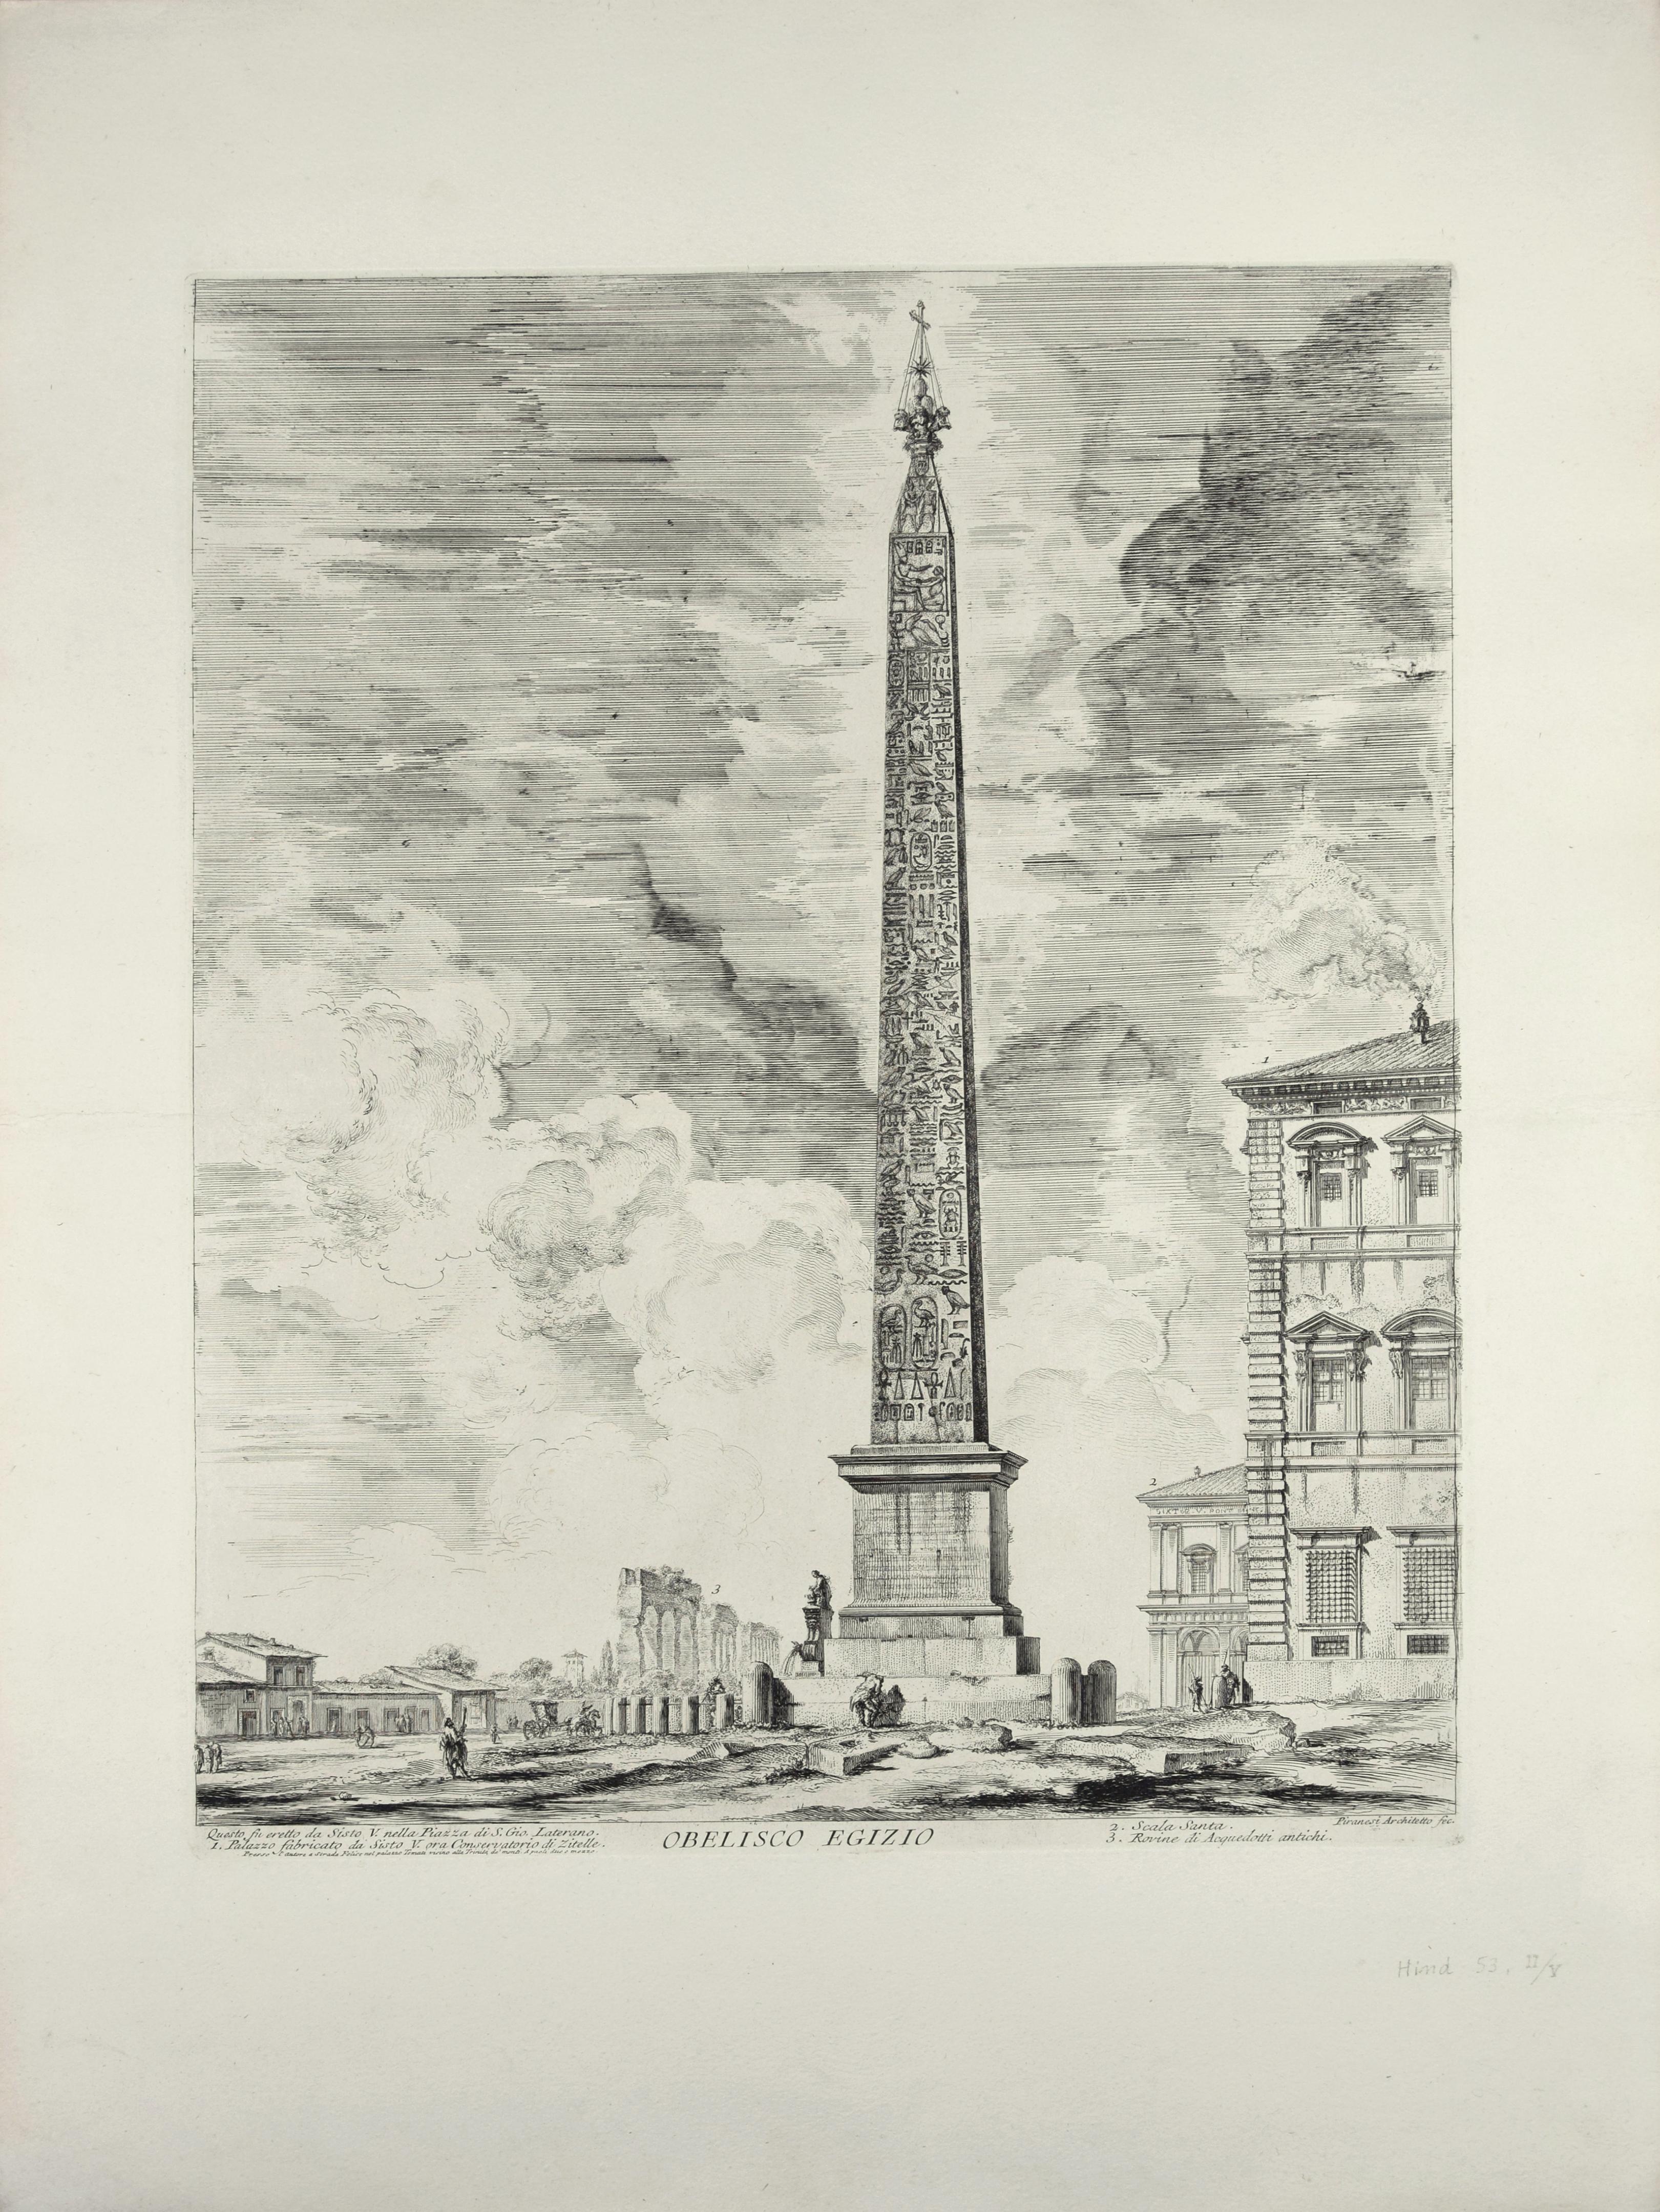 Obelisco Egizio (Egyptian Obelisk) - Etching by G. B. Piranesi